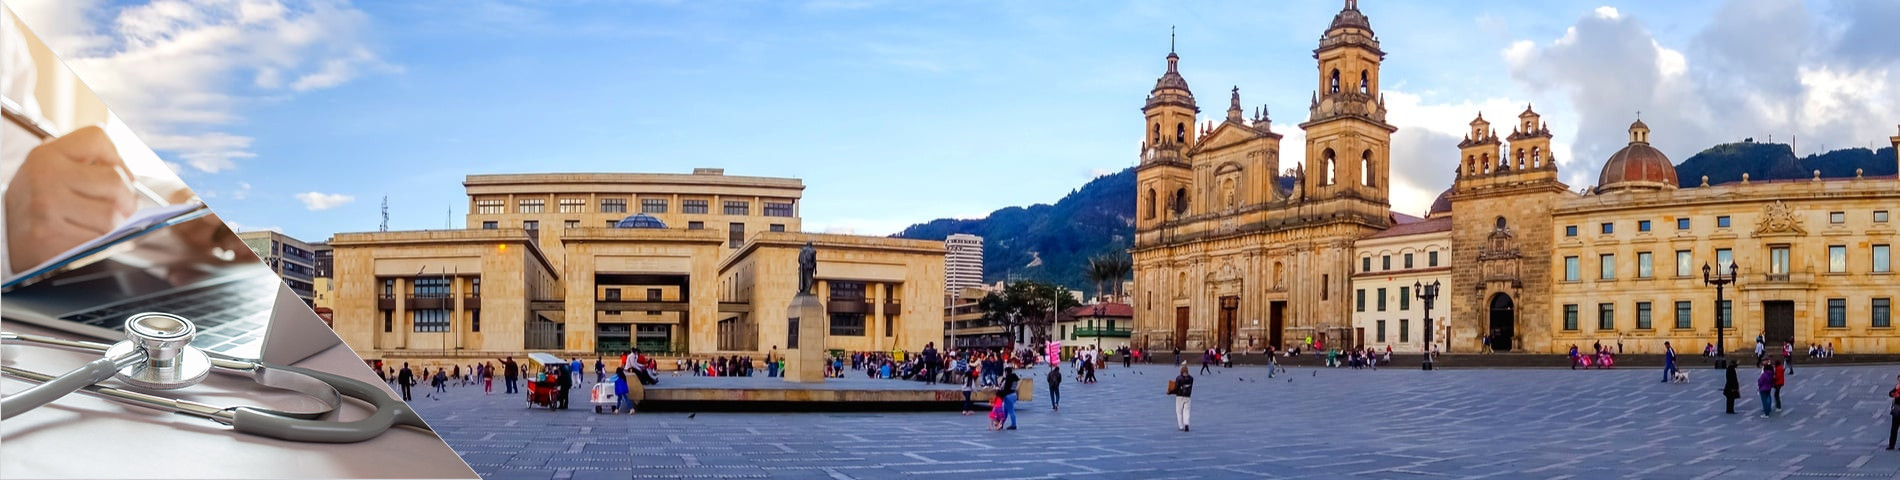 Bogotá - Španělština pro Doktory a sestry